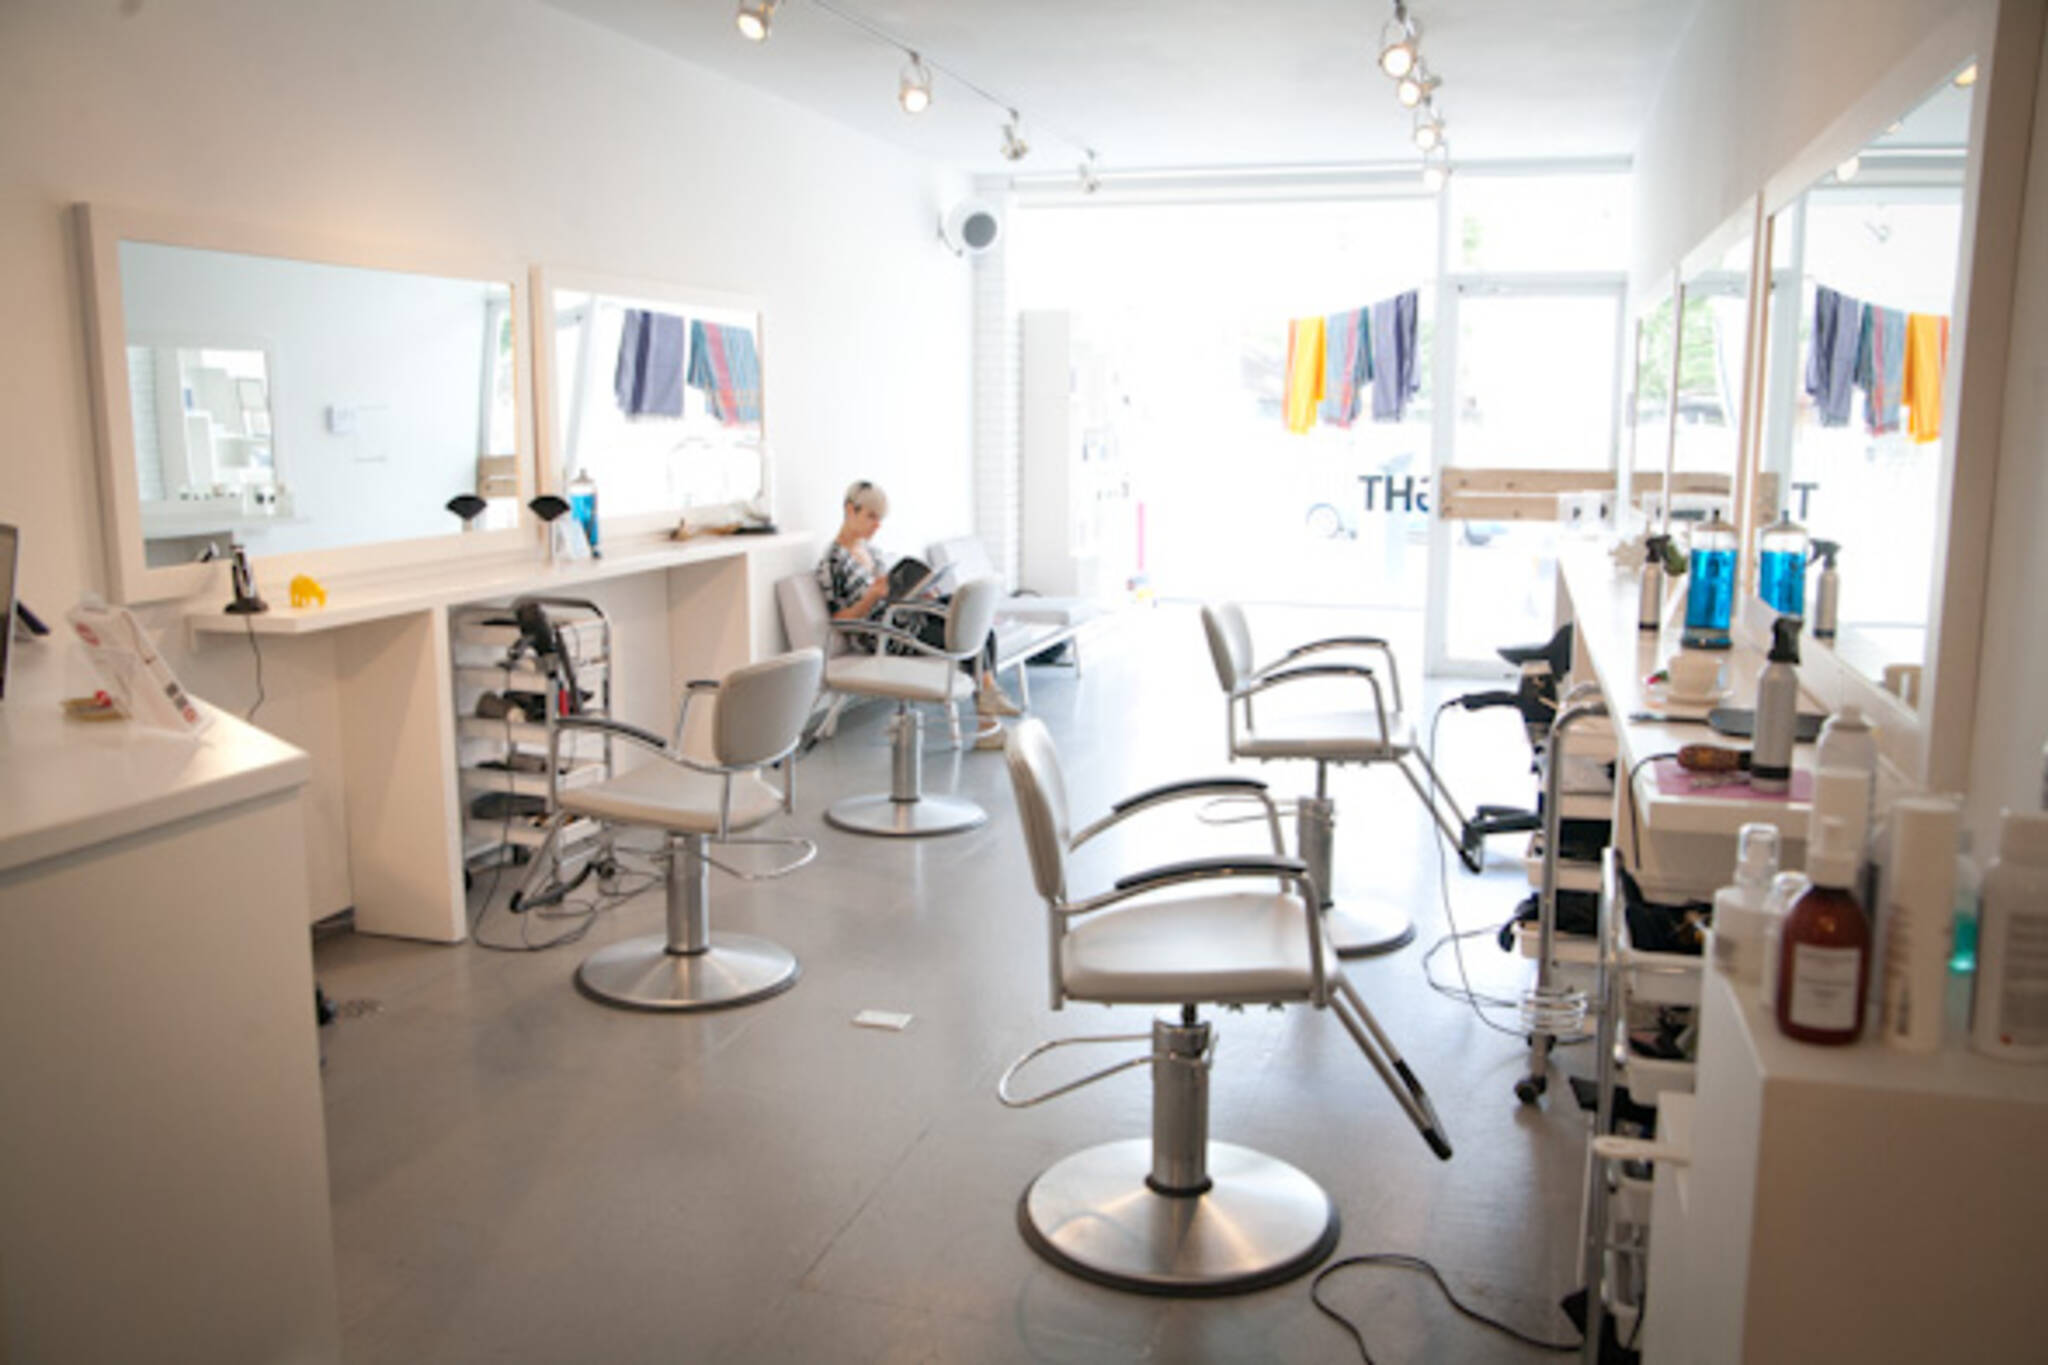 dundas west hair salon